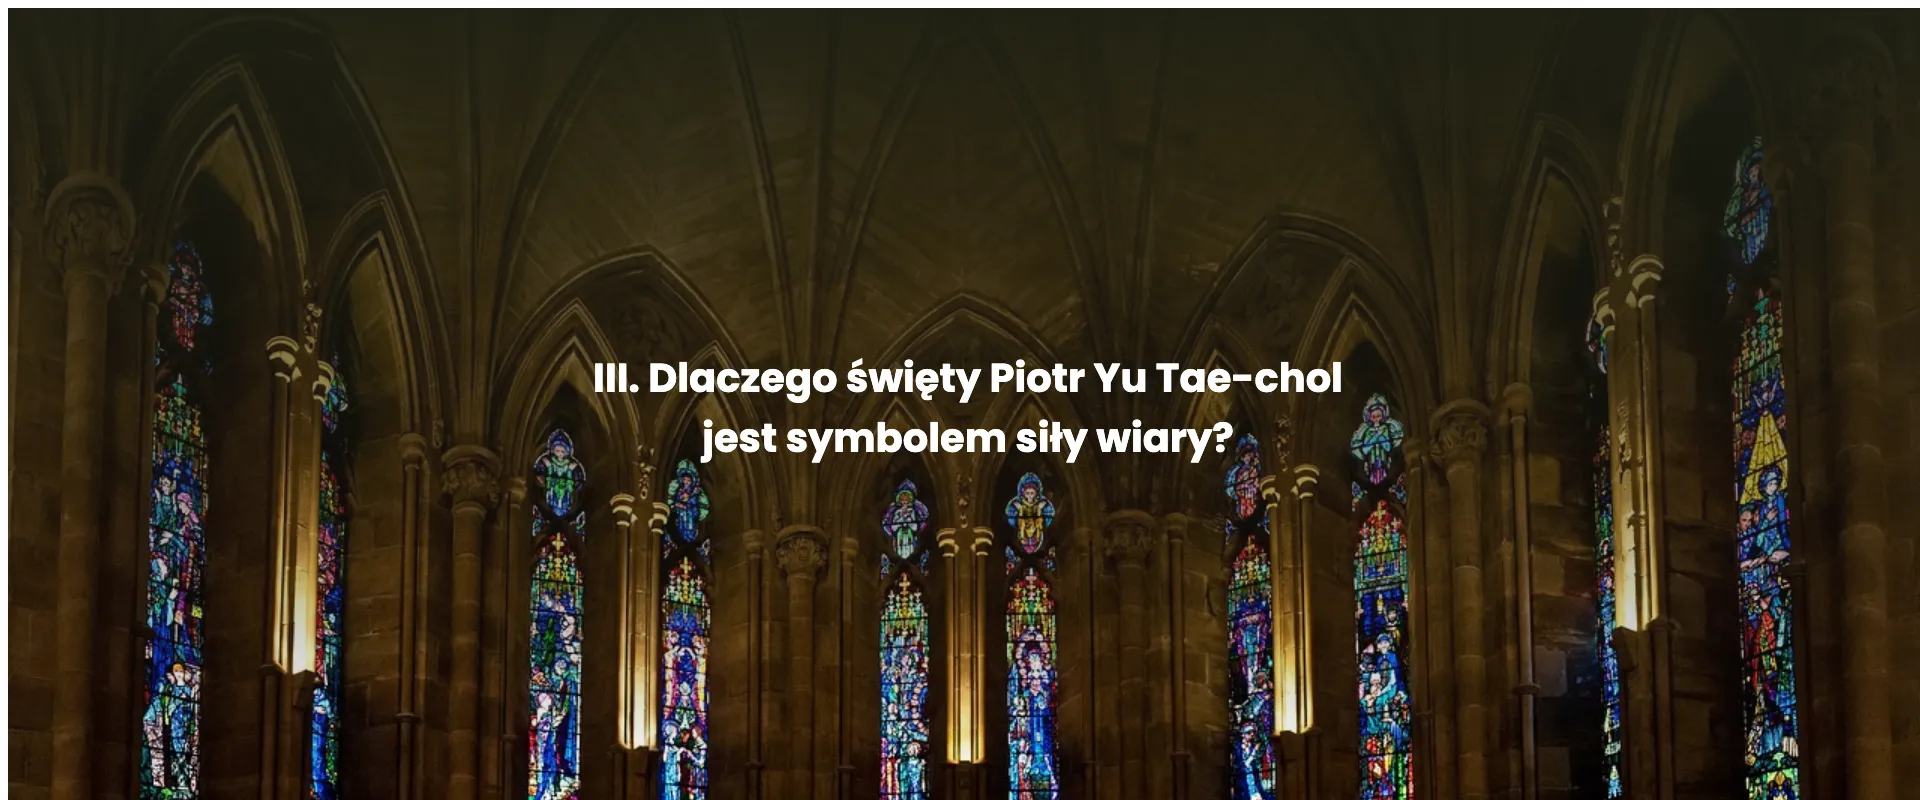 III. Dlaczego święty Piotr Yu Tae-chol jest symbolem siły wiary?